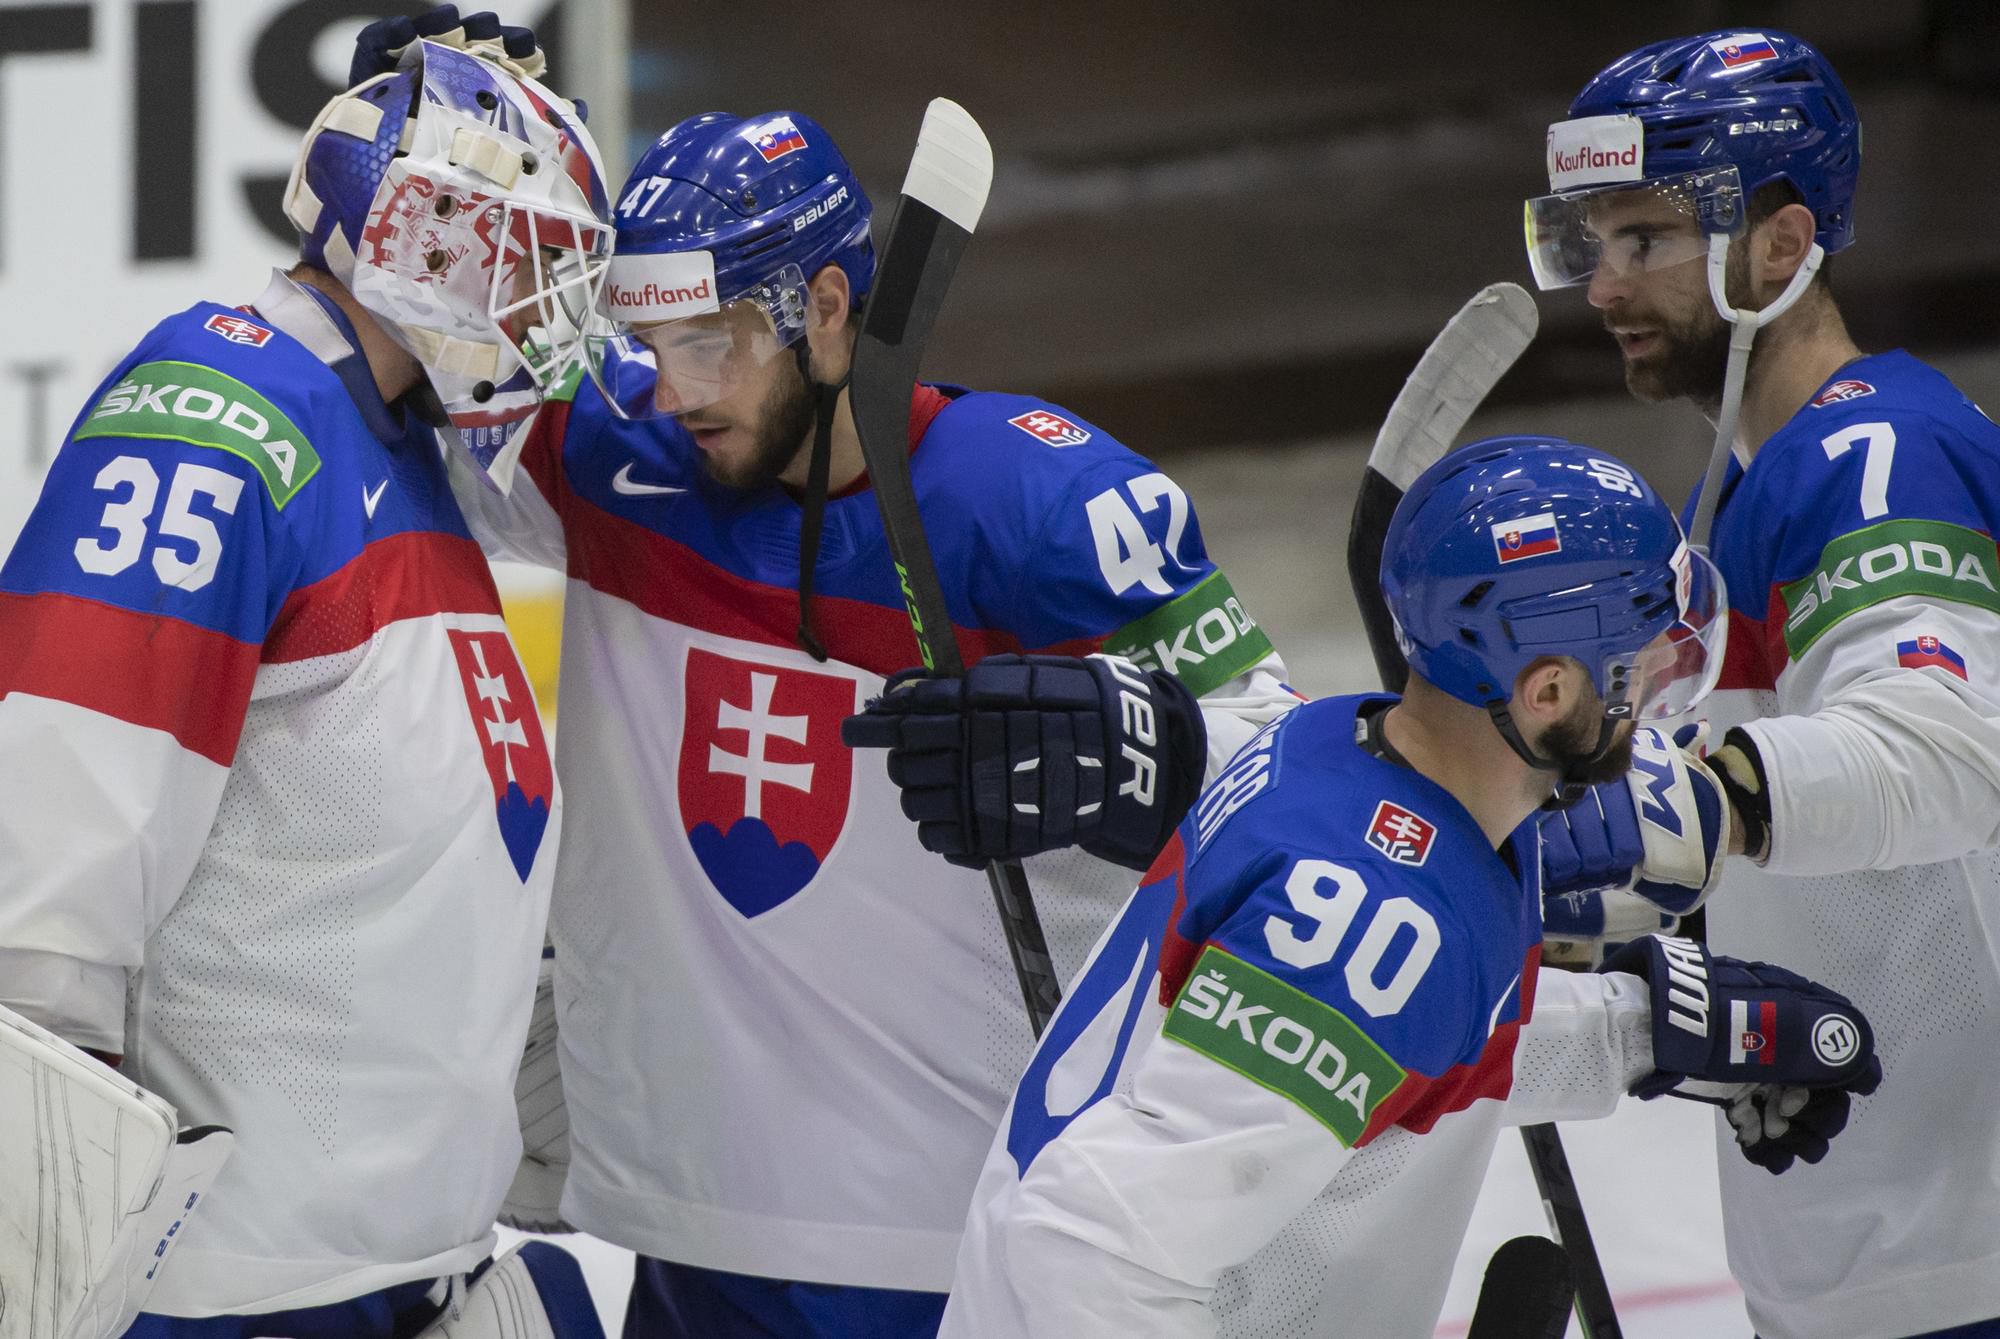 MS v hokeji 2022: Taliansko - Slovensko (Adam Húska, Mário Lunter, Tomáš Tatar, Mário Grman)